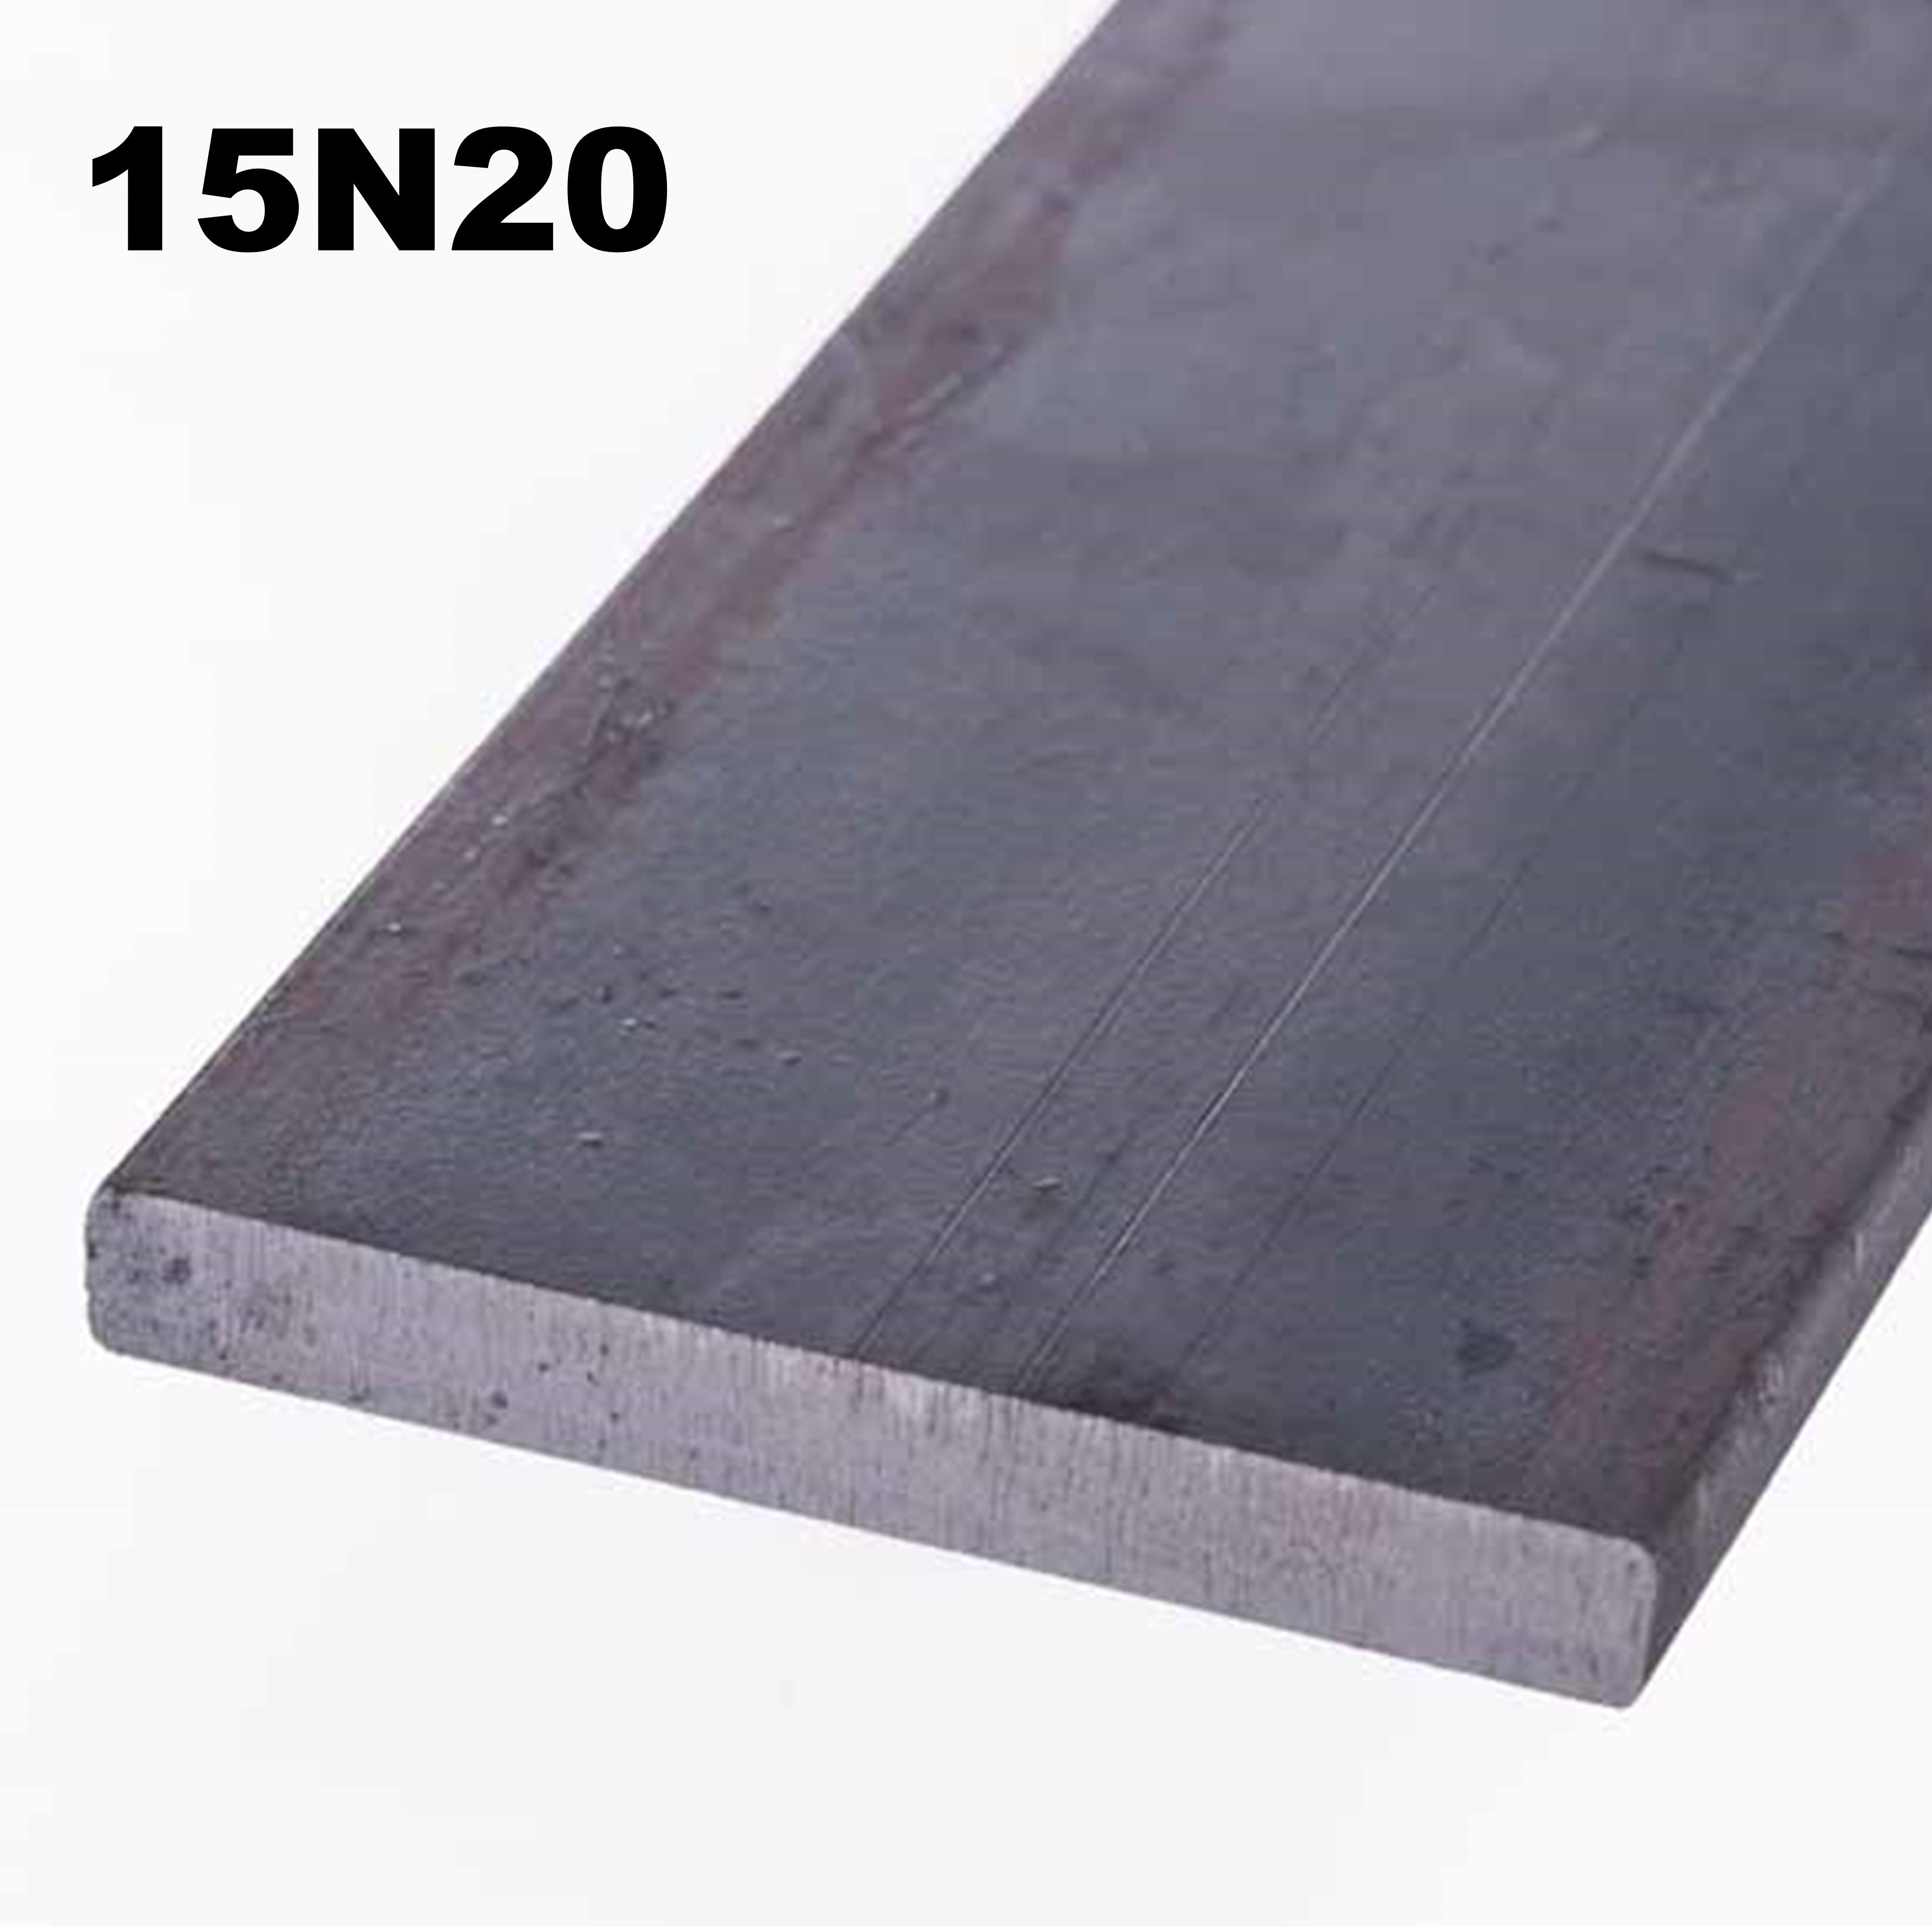 15N20 High Carbon Nickel Steel Bar